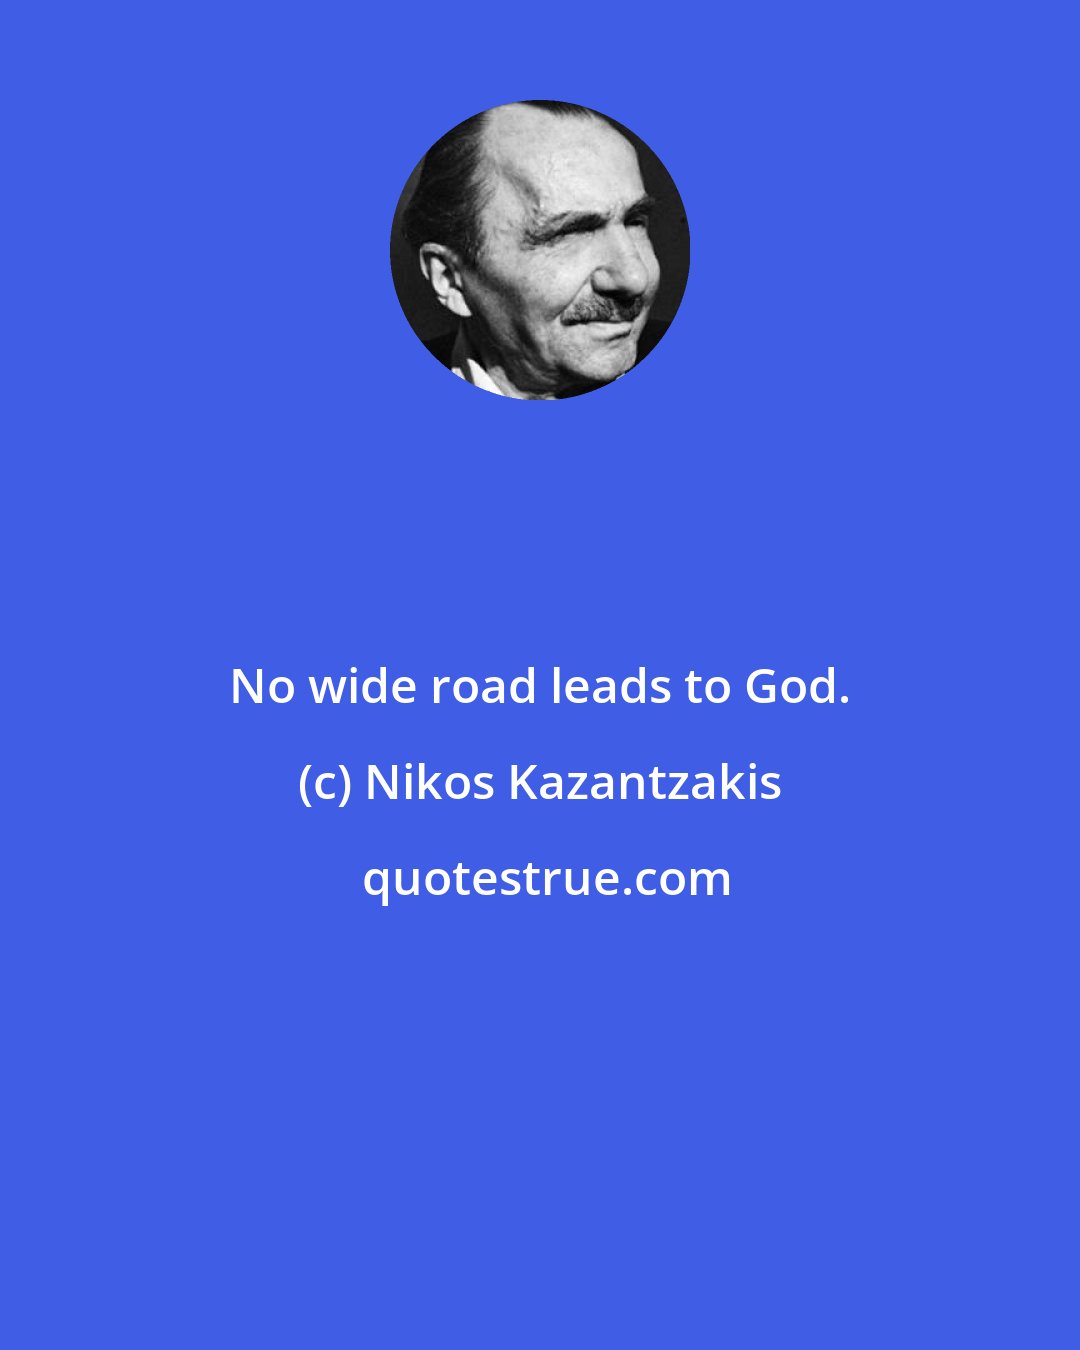 Nikos Kazantzakis: No wide road leads to God.